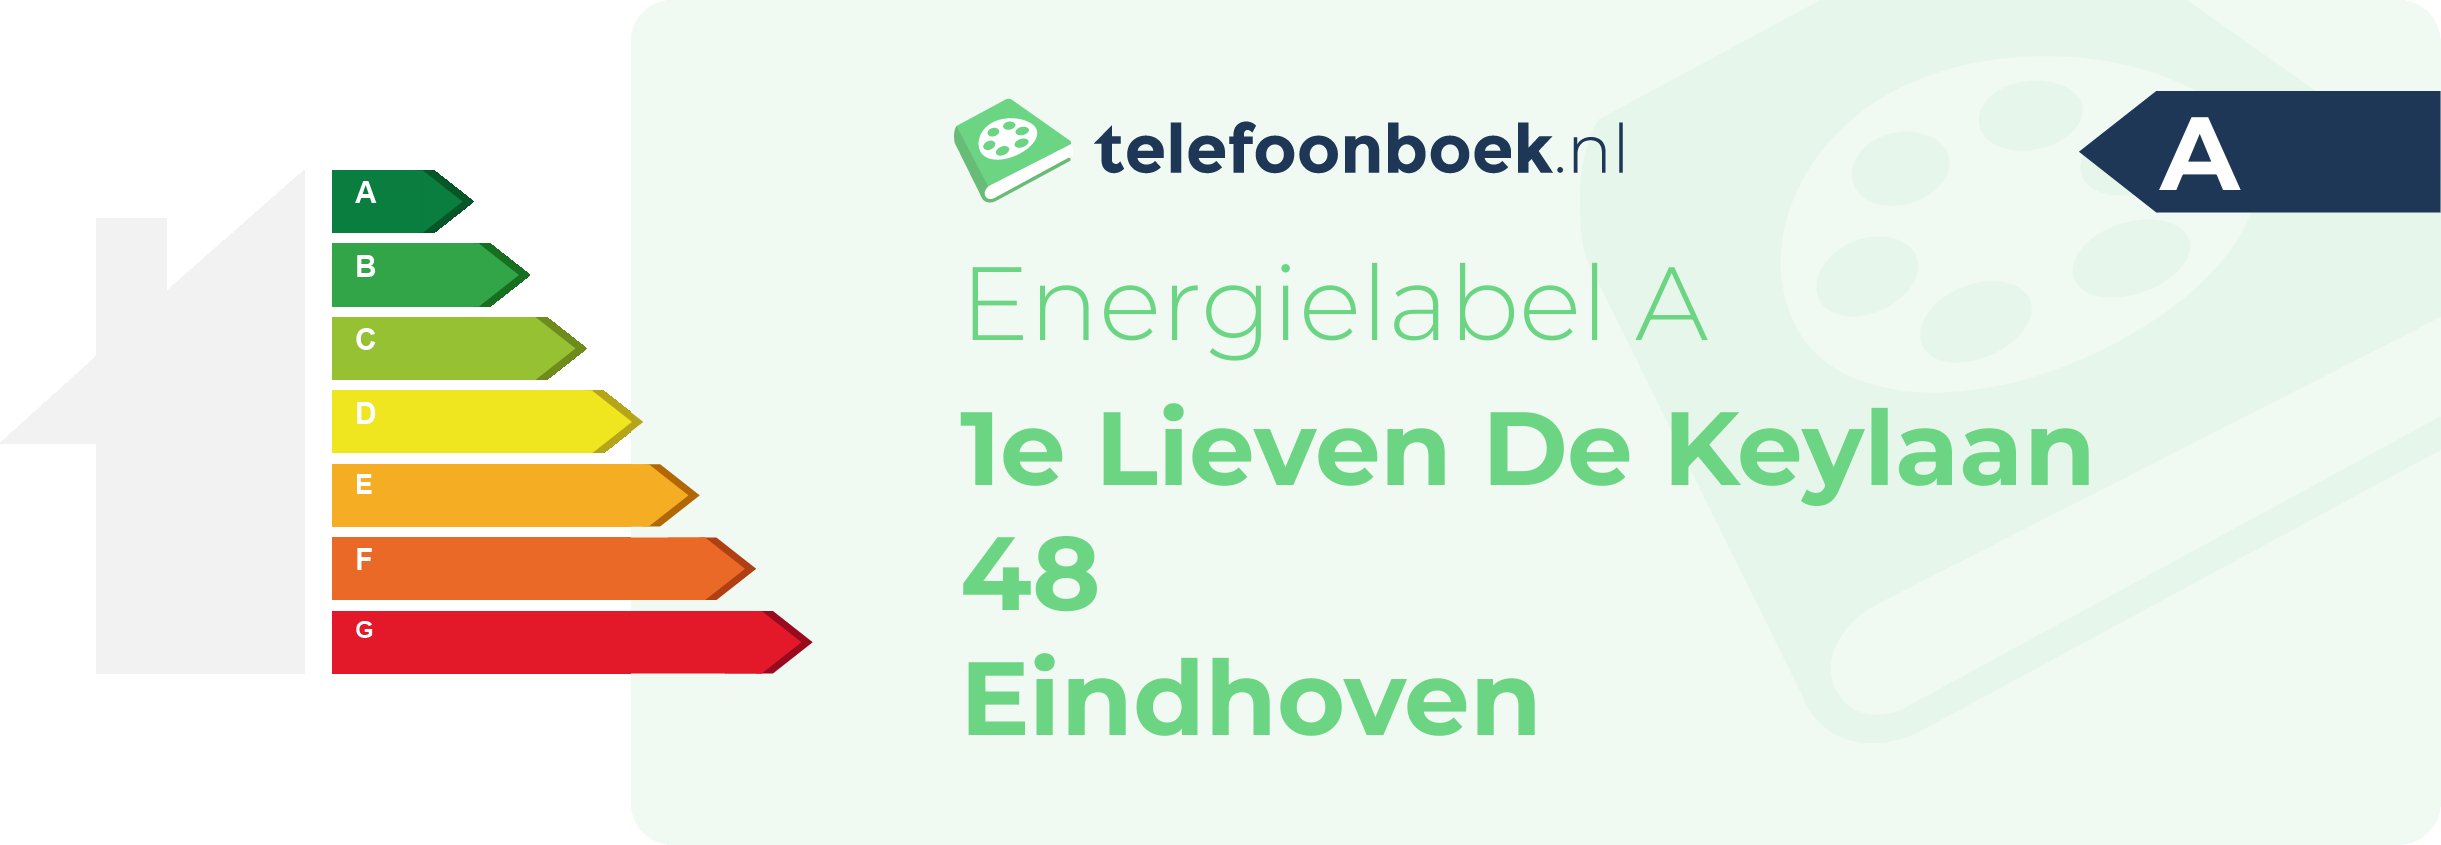 Energielabel 1e Lieven De Keylaan 48 Eindhoven